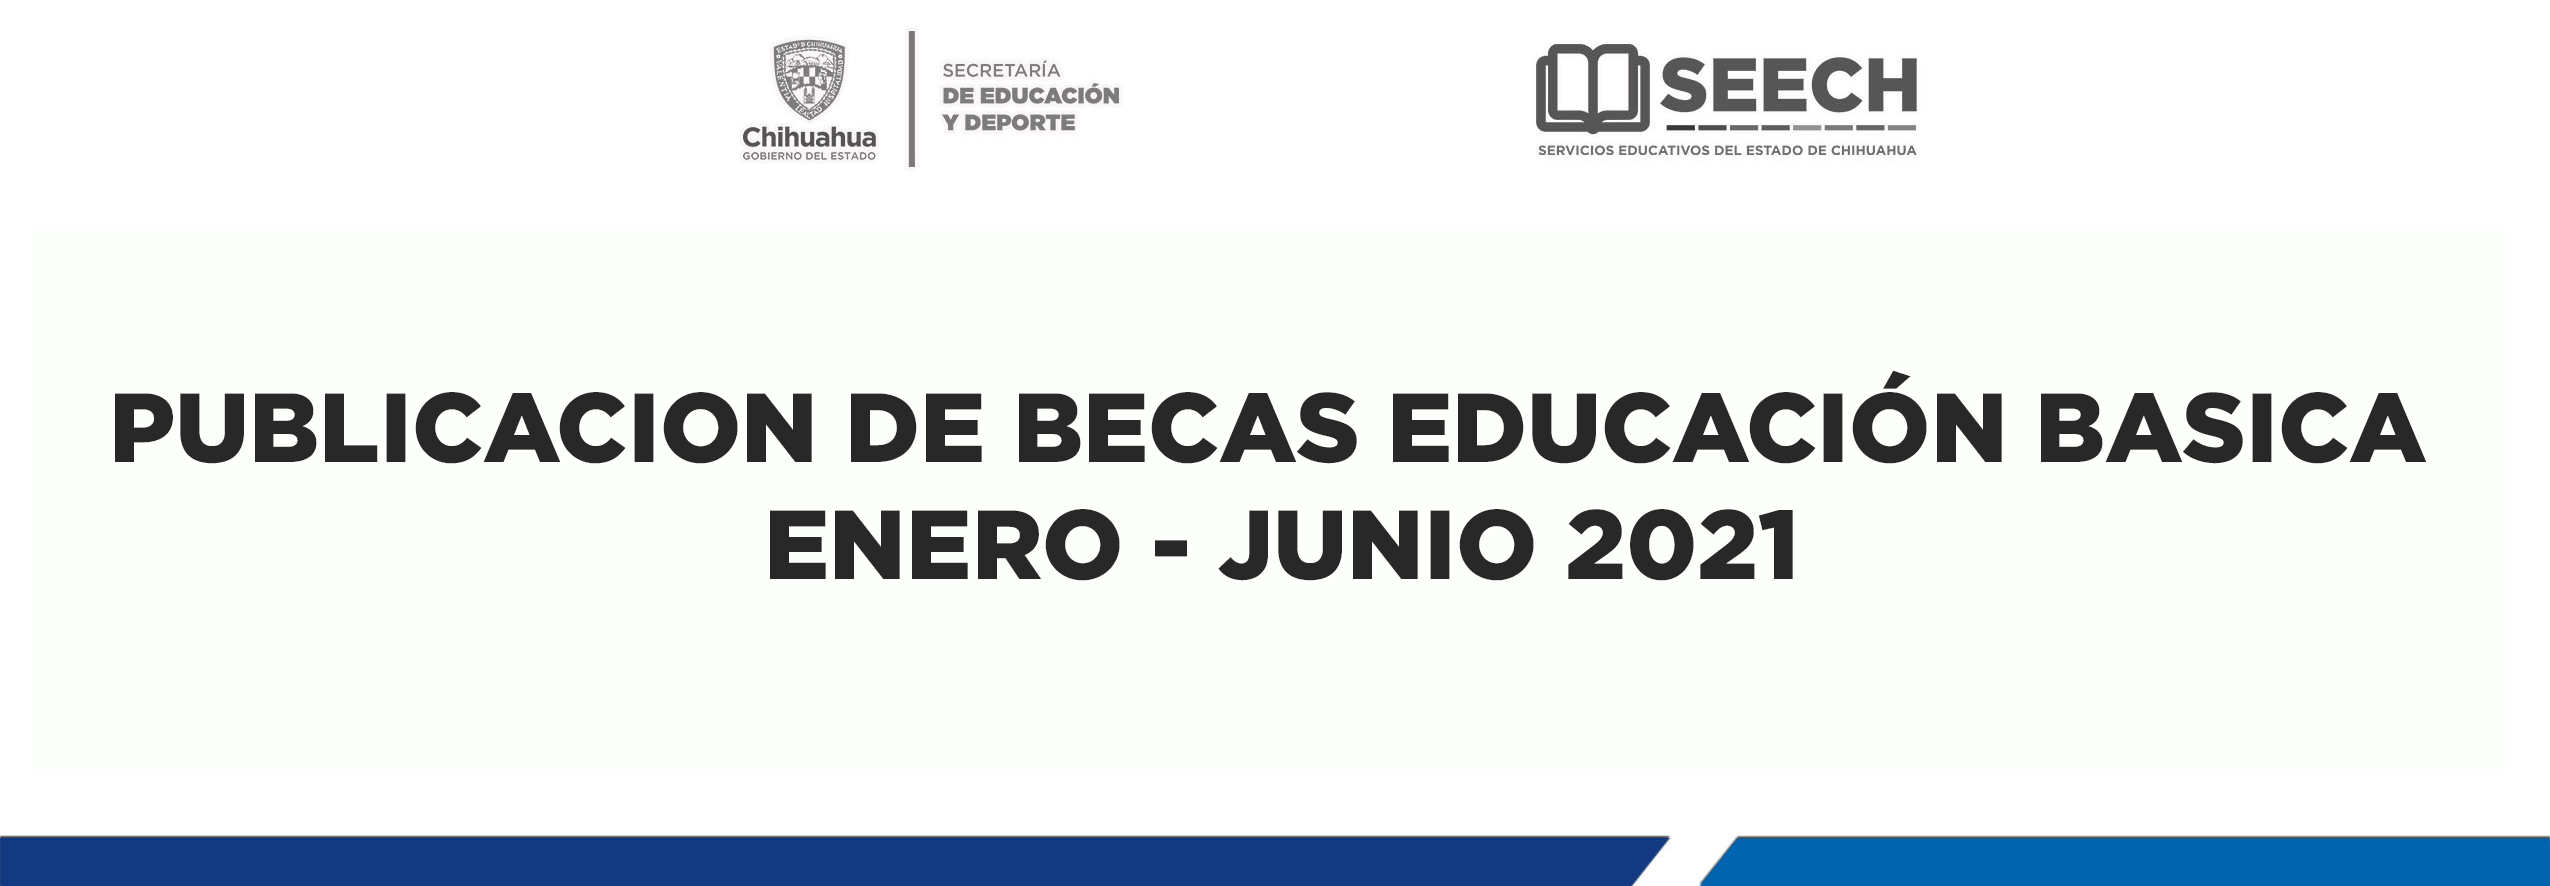 CONSULTE AQUÍ LOS LISTADOS DE BECAS EDUCACIÓN BASICA  ENERO - JUNIO 2021